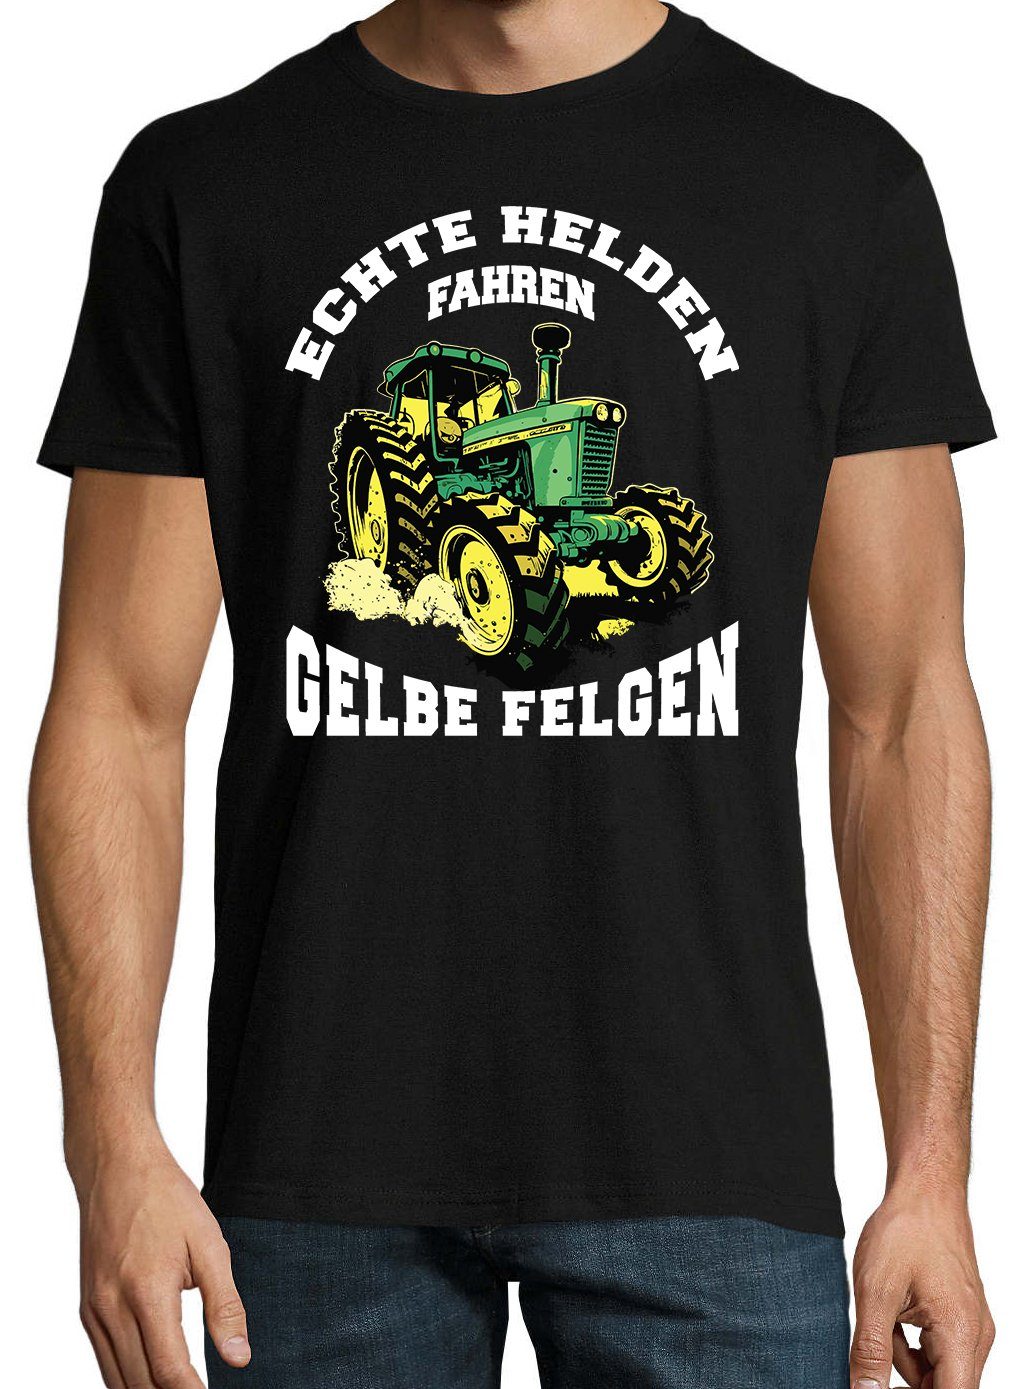 Spruch Felgen" Print-Shirt lustigem Youth fahren Herren Helden "Echte Schwarz mit gelbe Designz T-Shirt